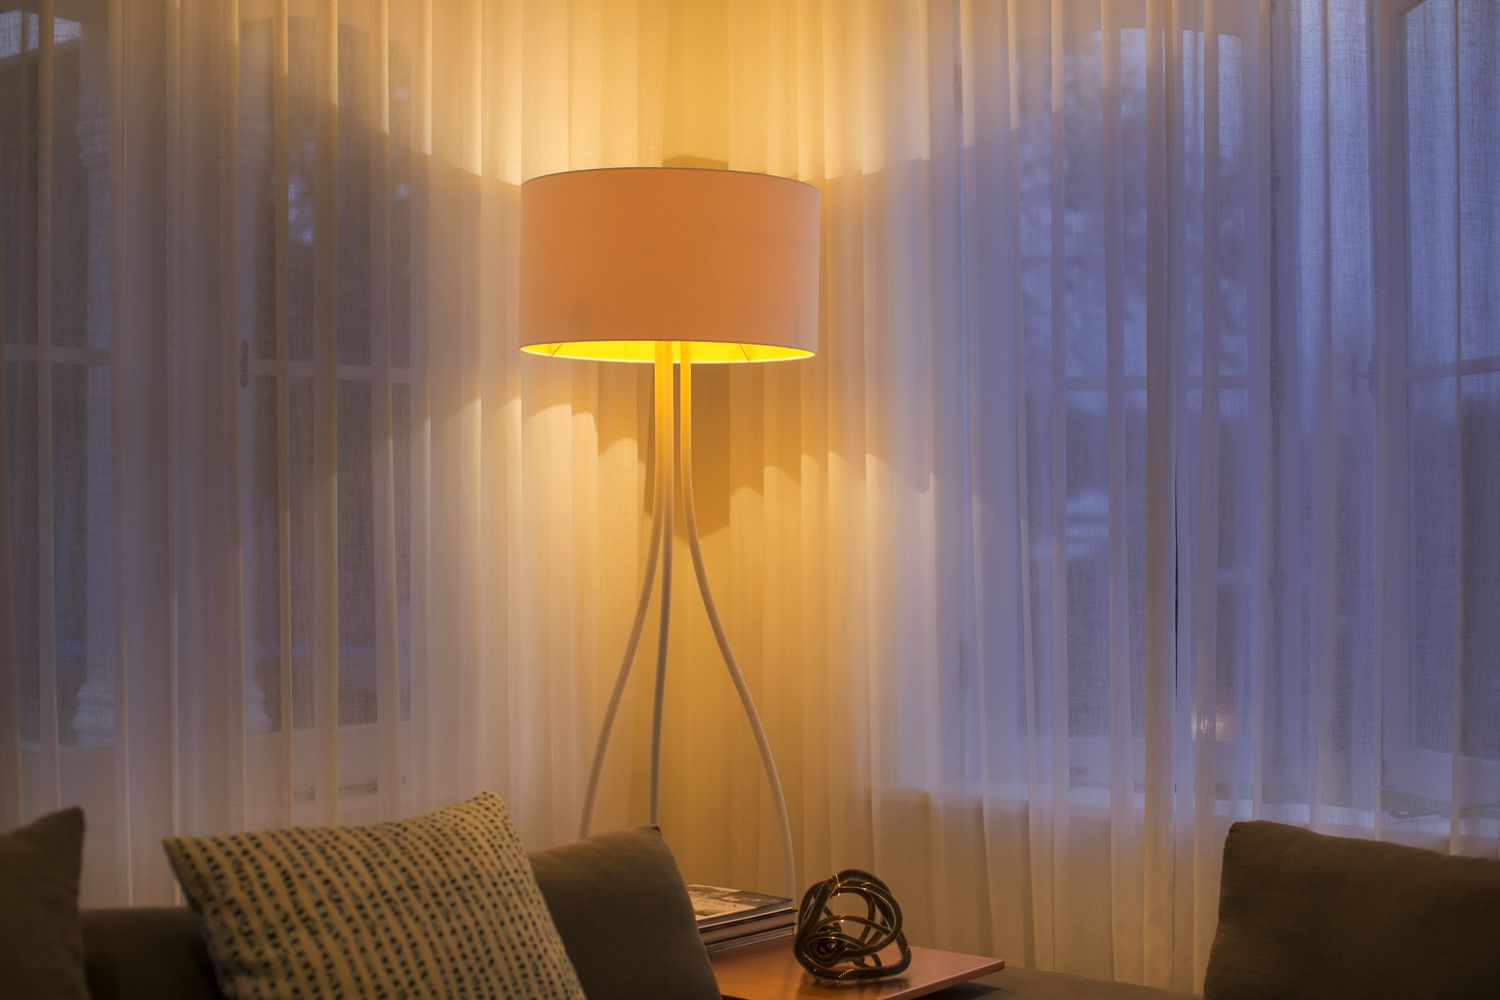 Beleuchtete Stehlampe am Fenster mit durchsichtigen Vorhängen